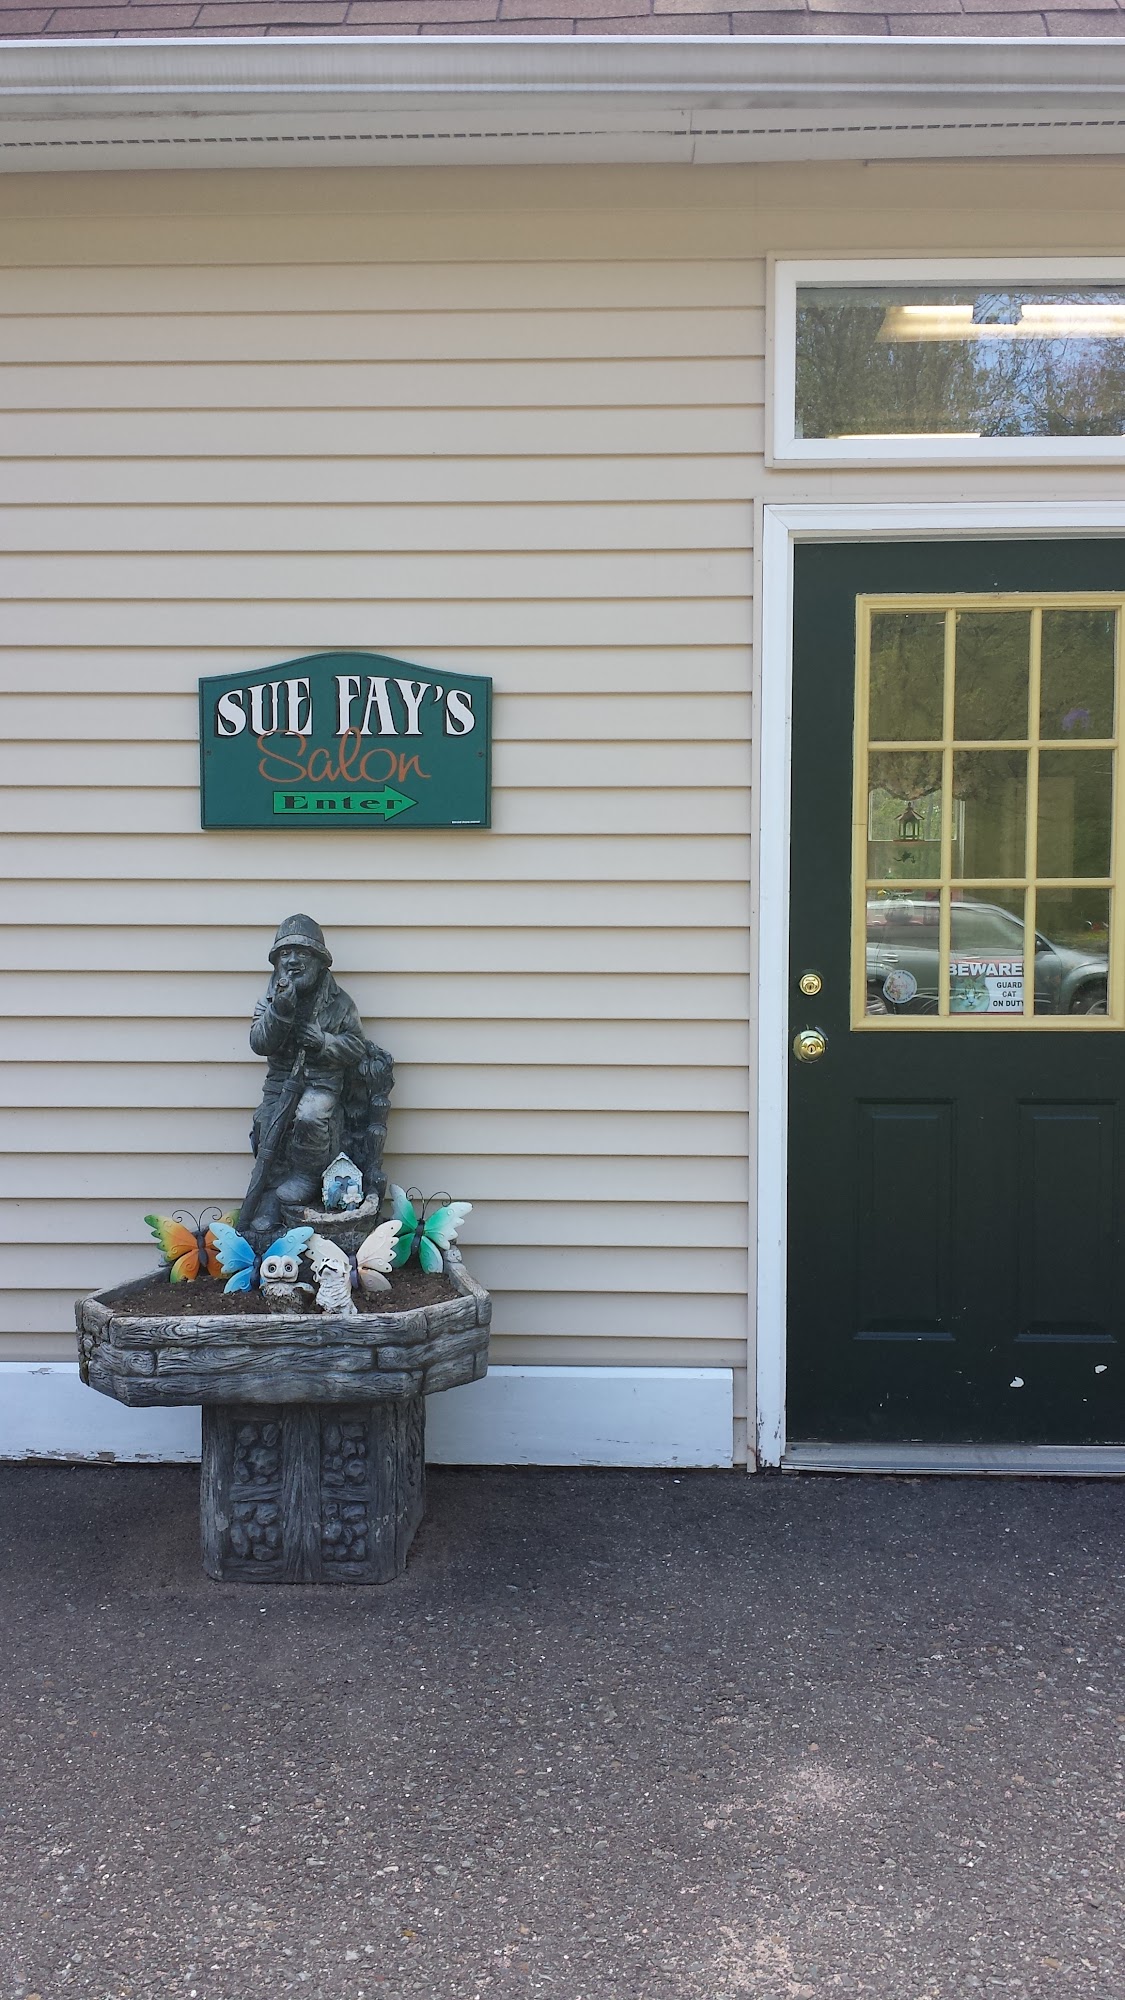 Sue Fay's Full Services Family Sln